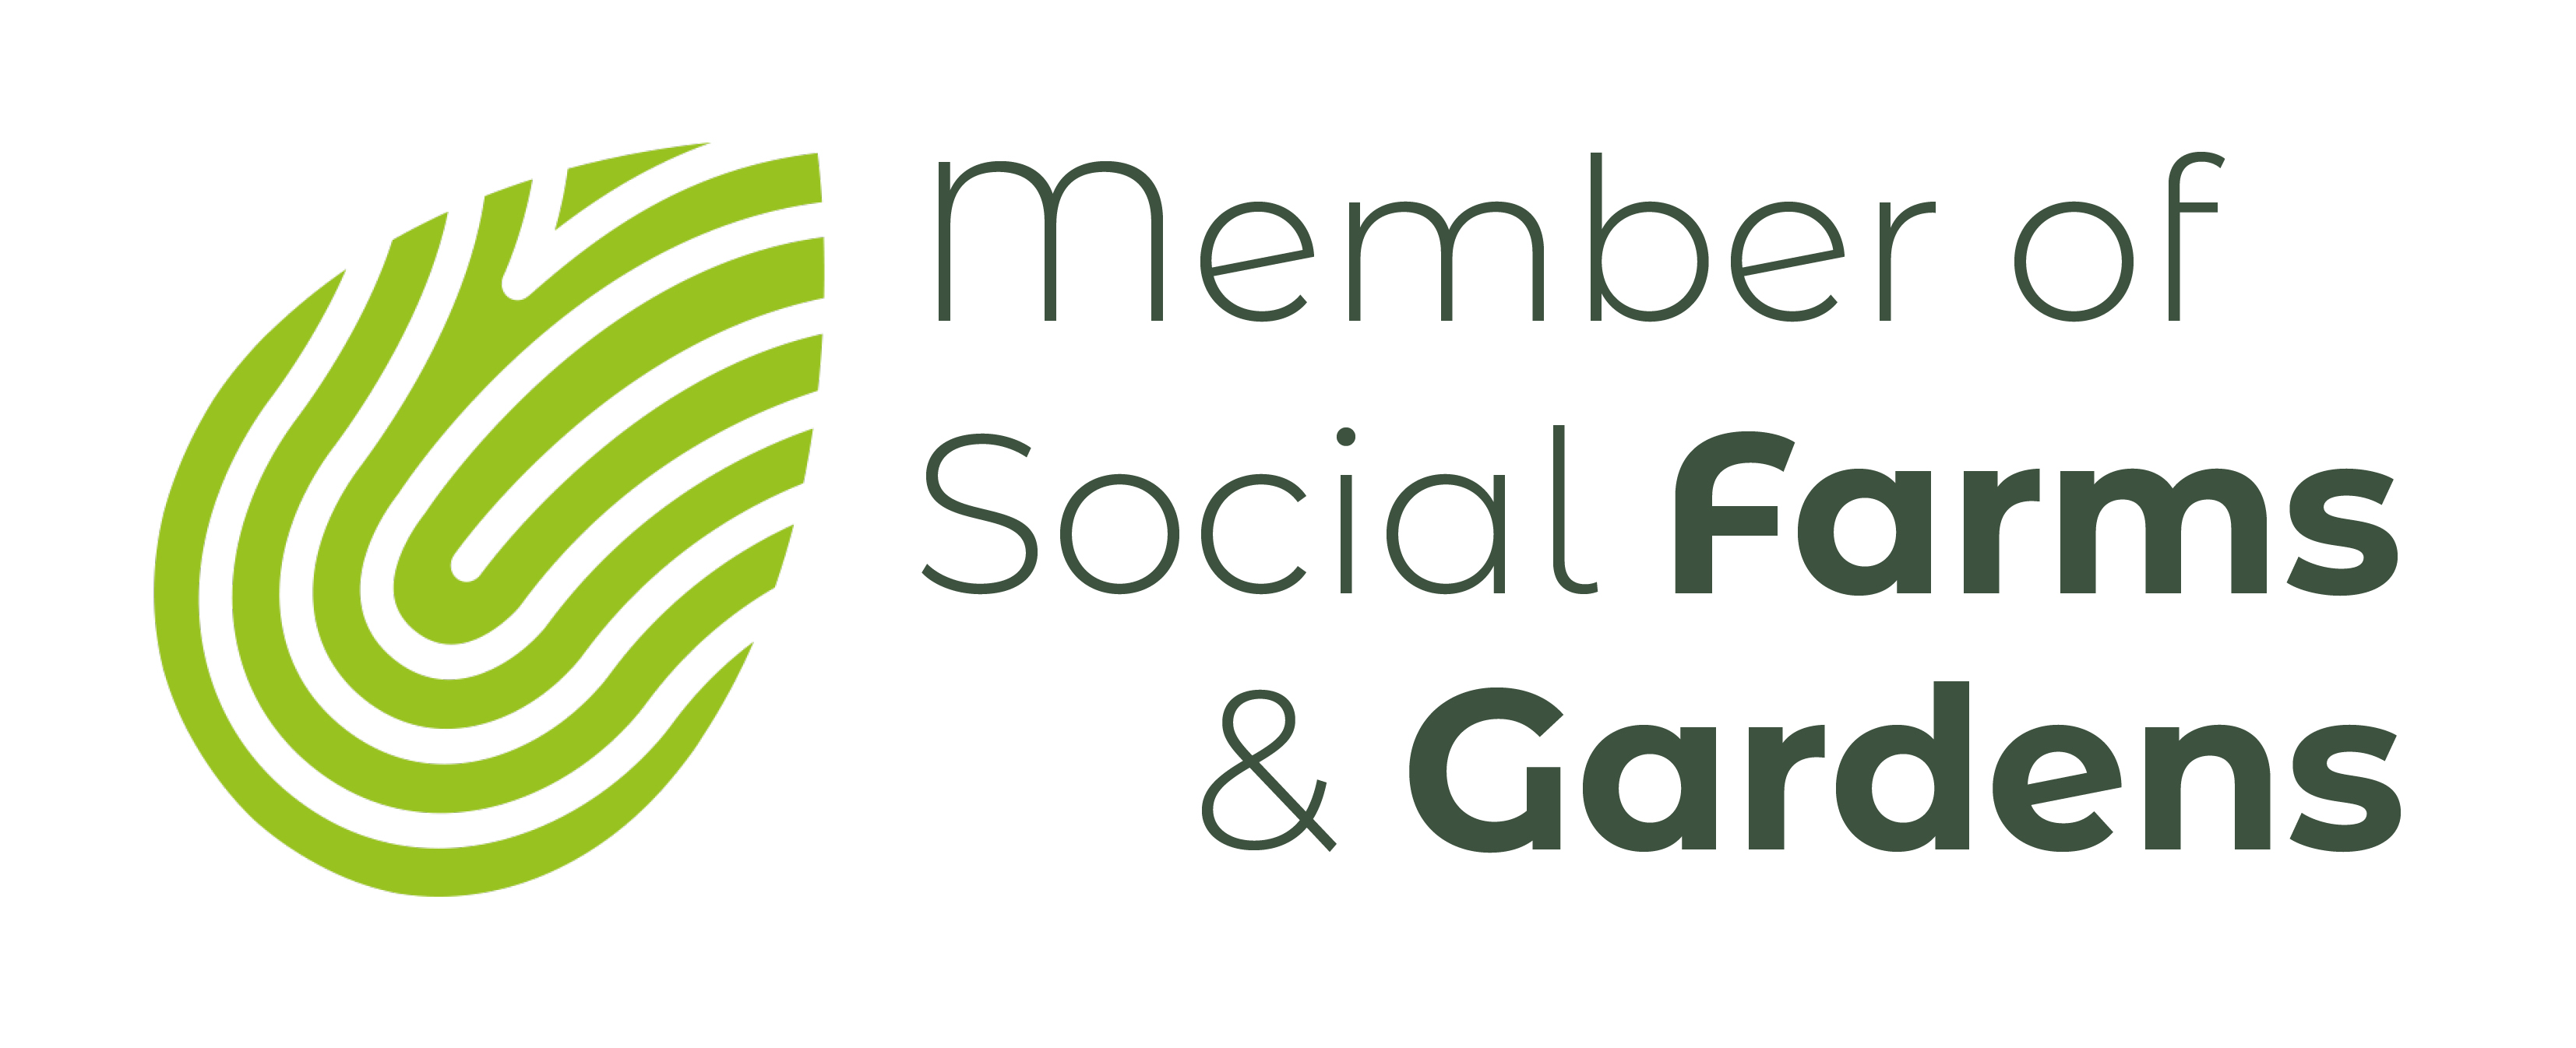 Care Farms and Gardens